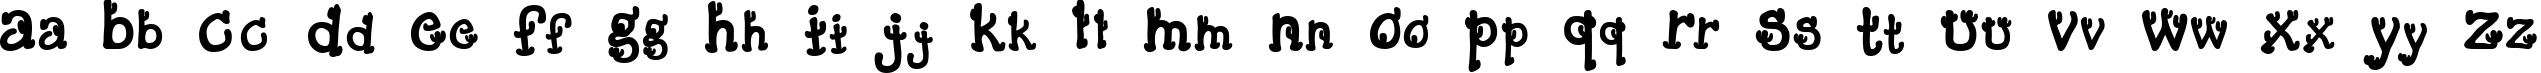 Пример написания английского алфавита шрифтом Cactus Sandwich Fill FM